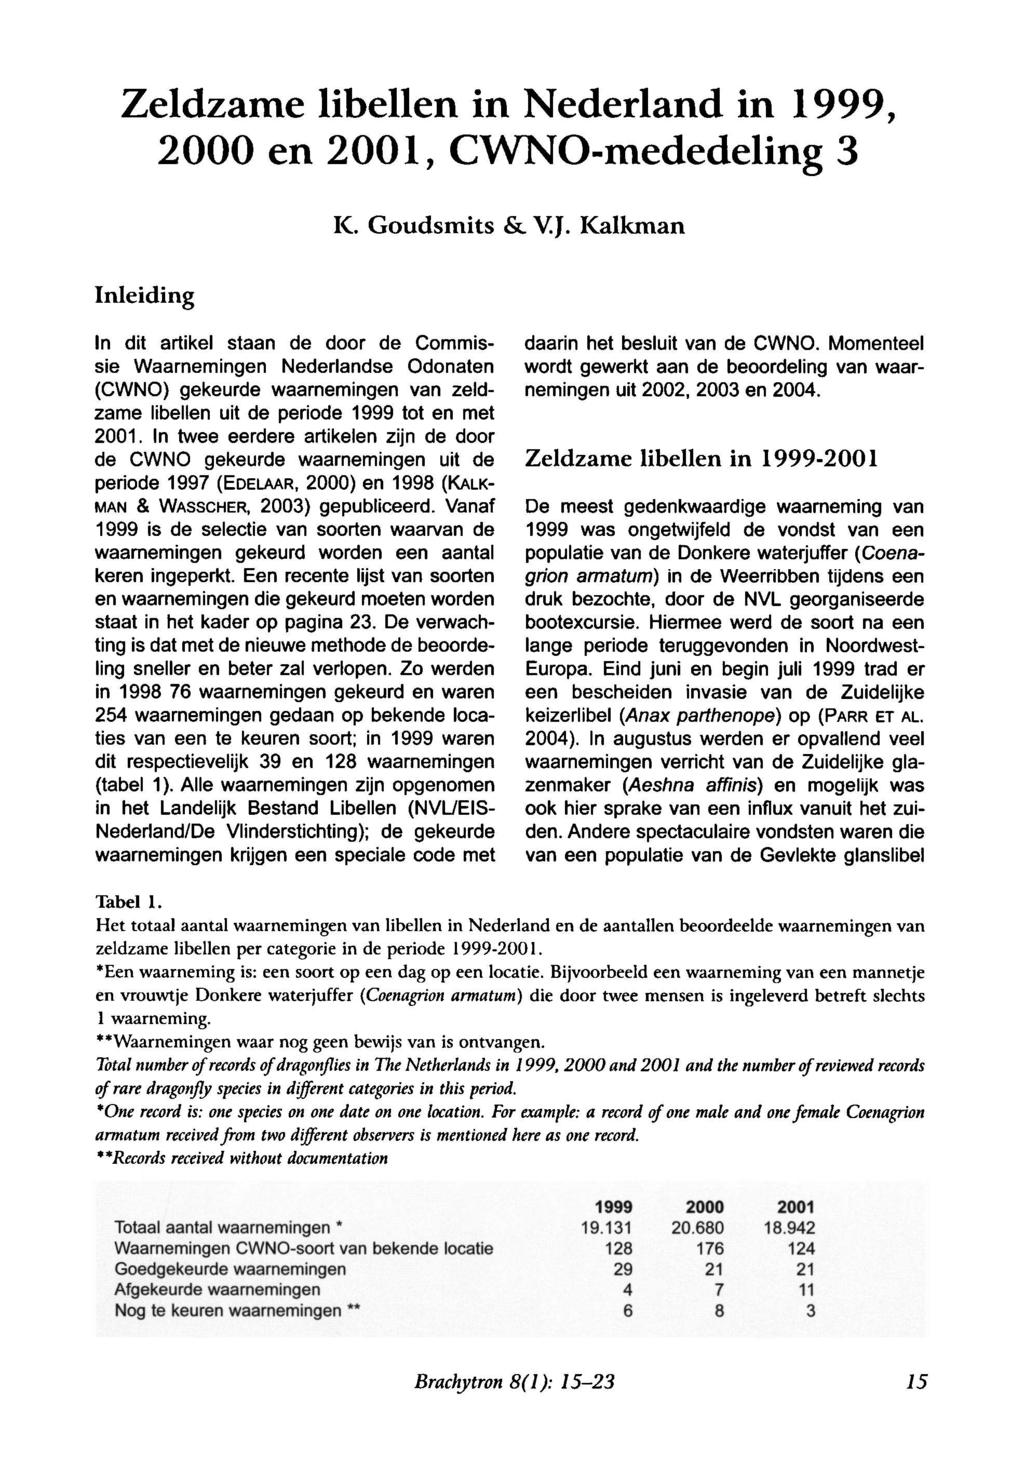 Zeldzame libellen in Nederland in 1999, 2000 en 2001, CWNO-mededeling 3 K. Goudsmits & V.J. Kalkman Inleiding daarin het besluit van de CWNO.